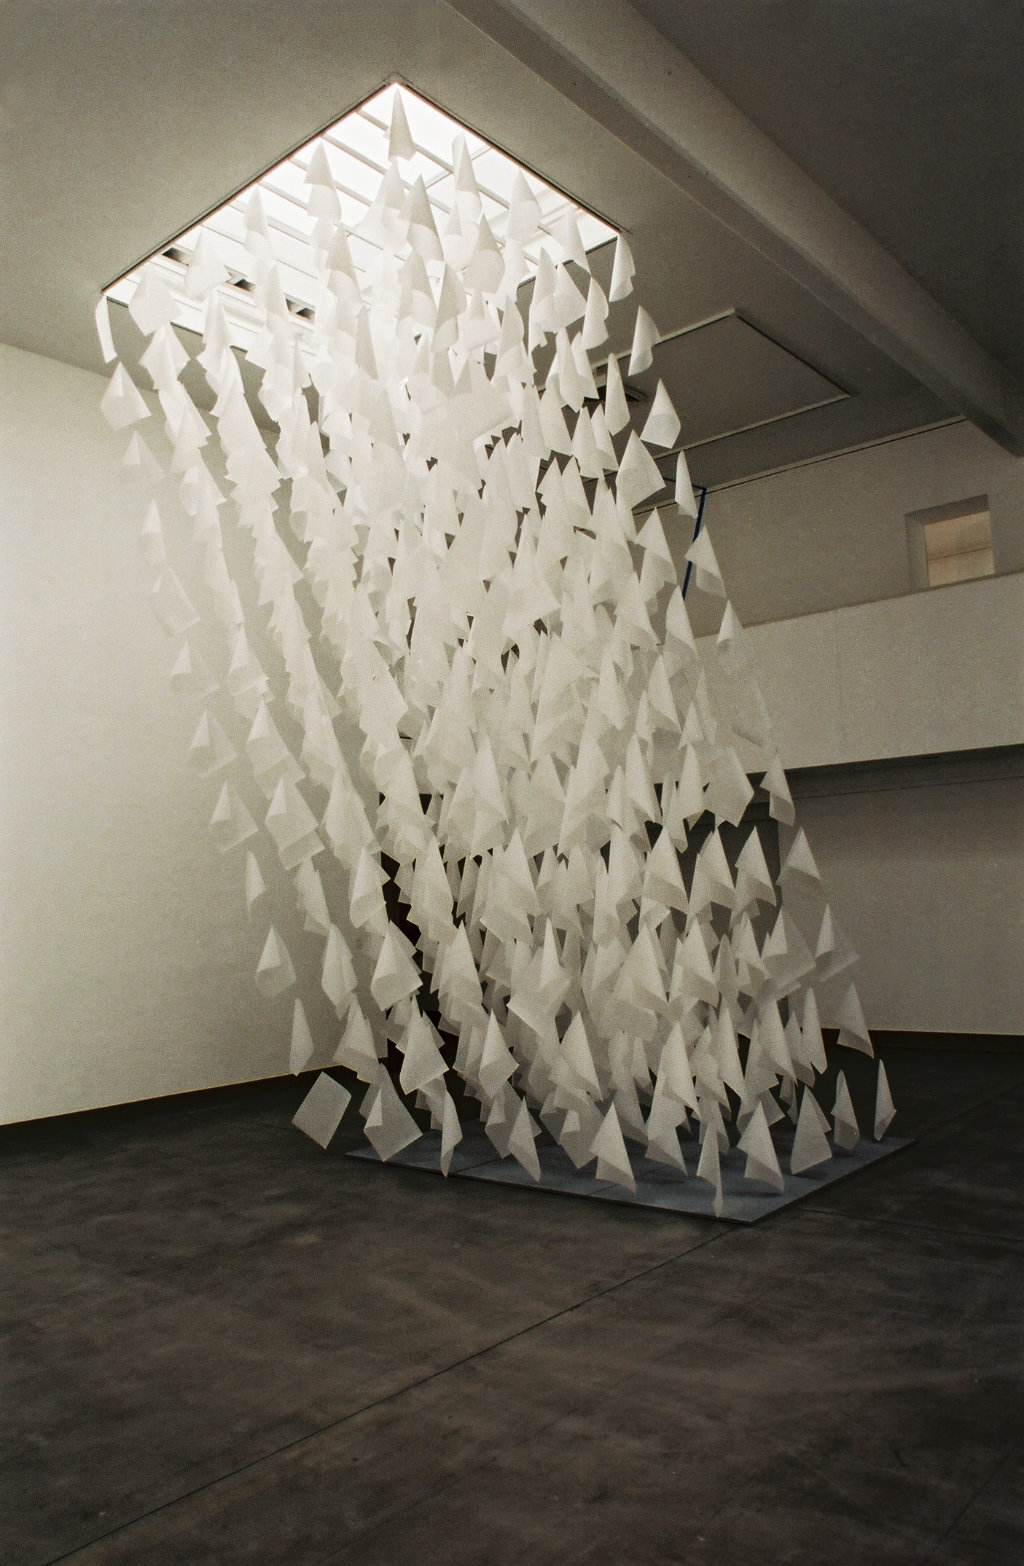 ICH 2001, Künstlerforum Bonn, Punktuell – Linear, Potsdamer Künstler in Bonn, Papier Nylon Blei, 600 x 200 x 300 cm